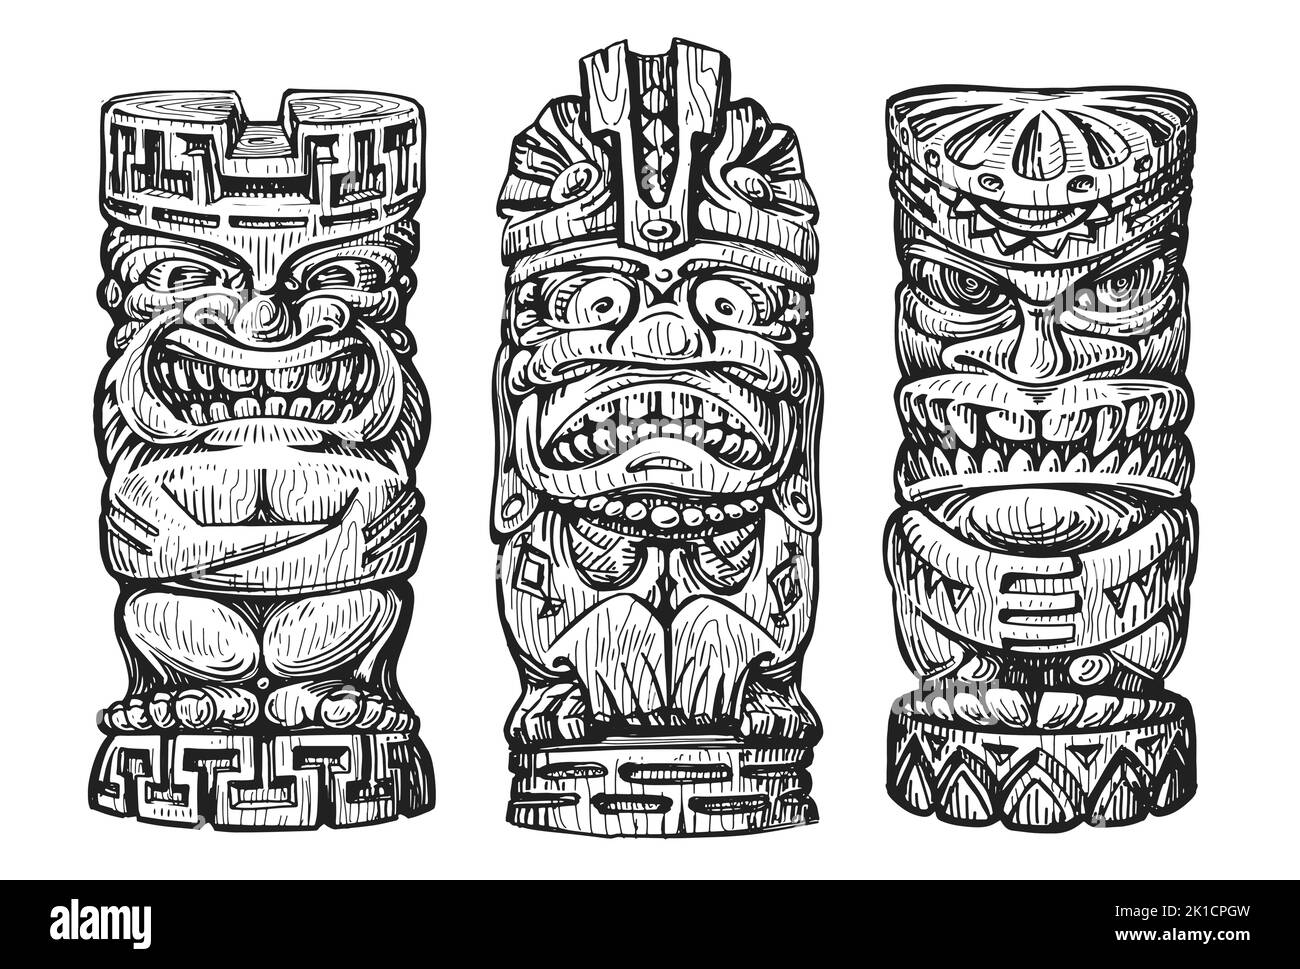 Croquis de masques tiki en bois d'Hawaï. Idole ethnique traditionnelle hawaïenne ou maorie. Vecteur totem tribal polynésien Illustration de Vecteur